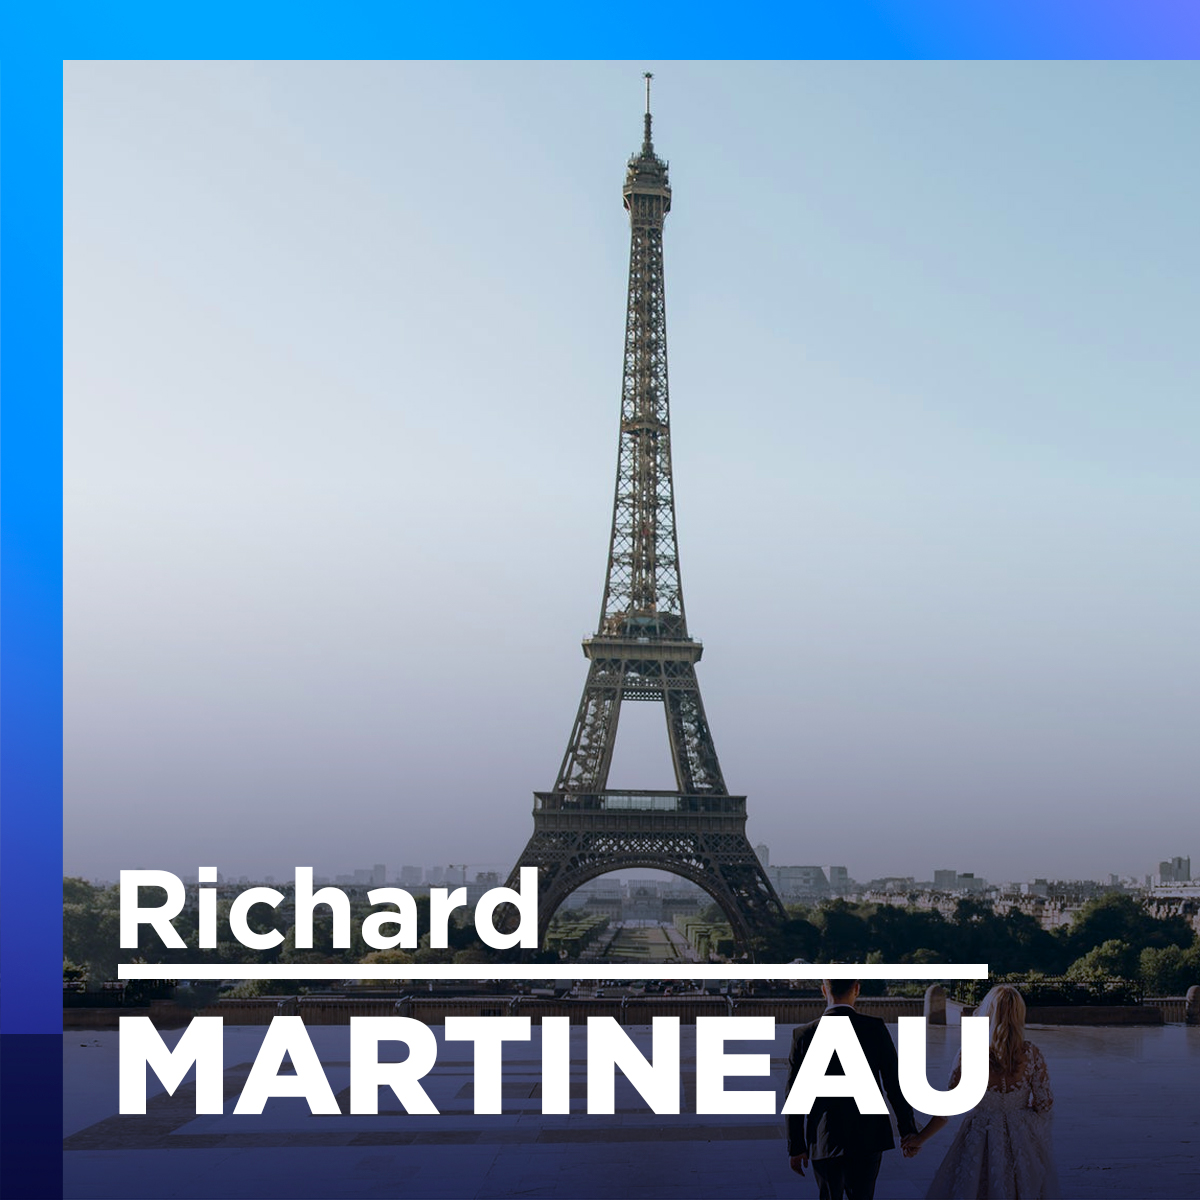 Paris Match publie une photo controversée d’Éric Zemmour, candidat à la présidentielle